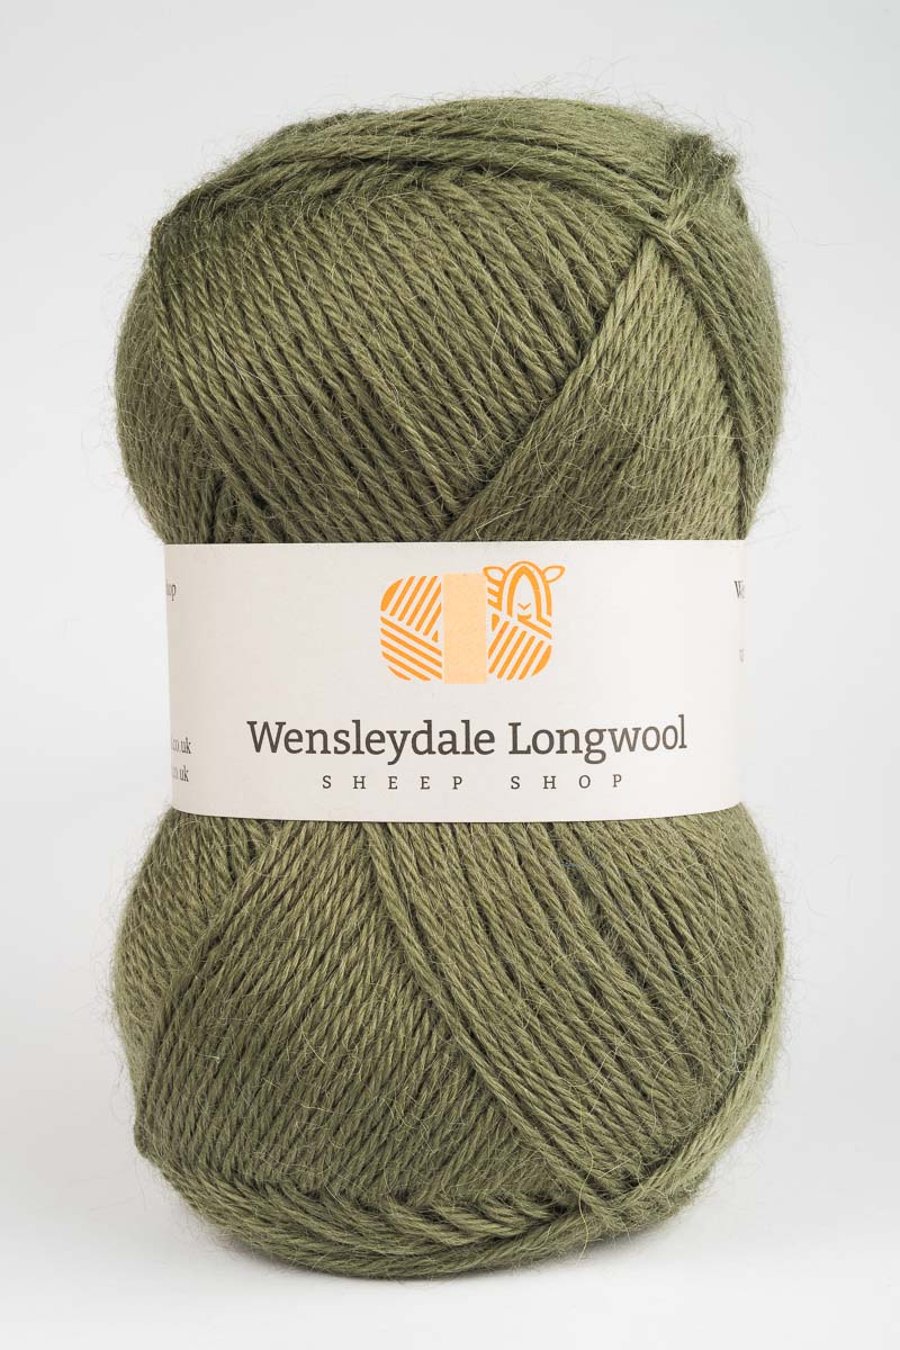 Wensleydale Longwool Double Knit Yarn - Spruce Green